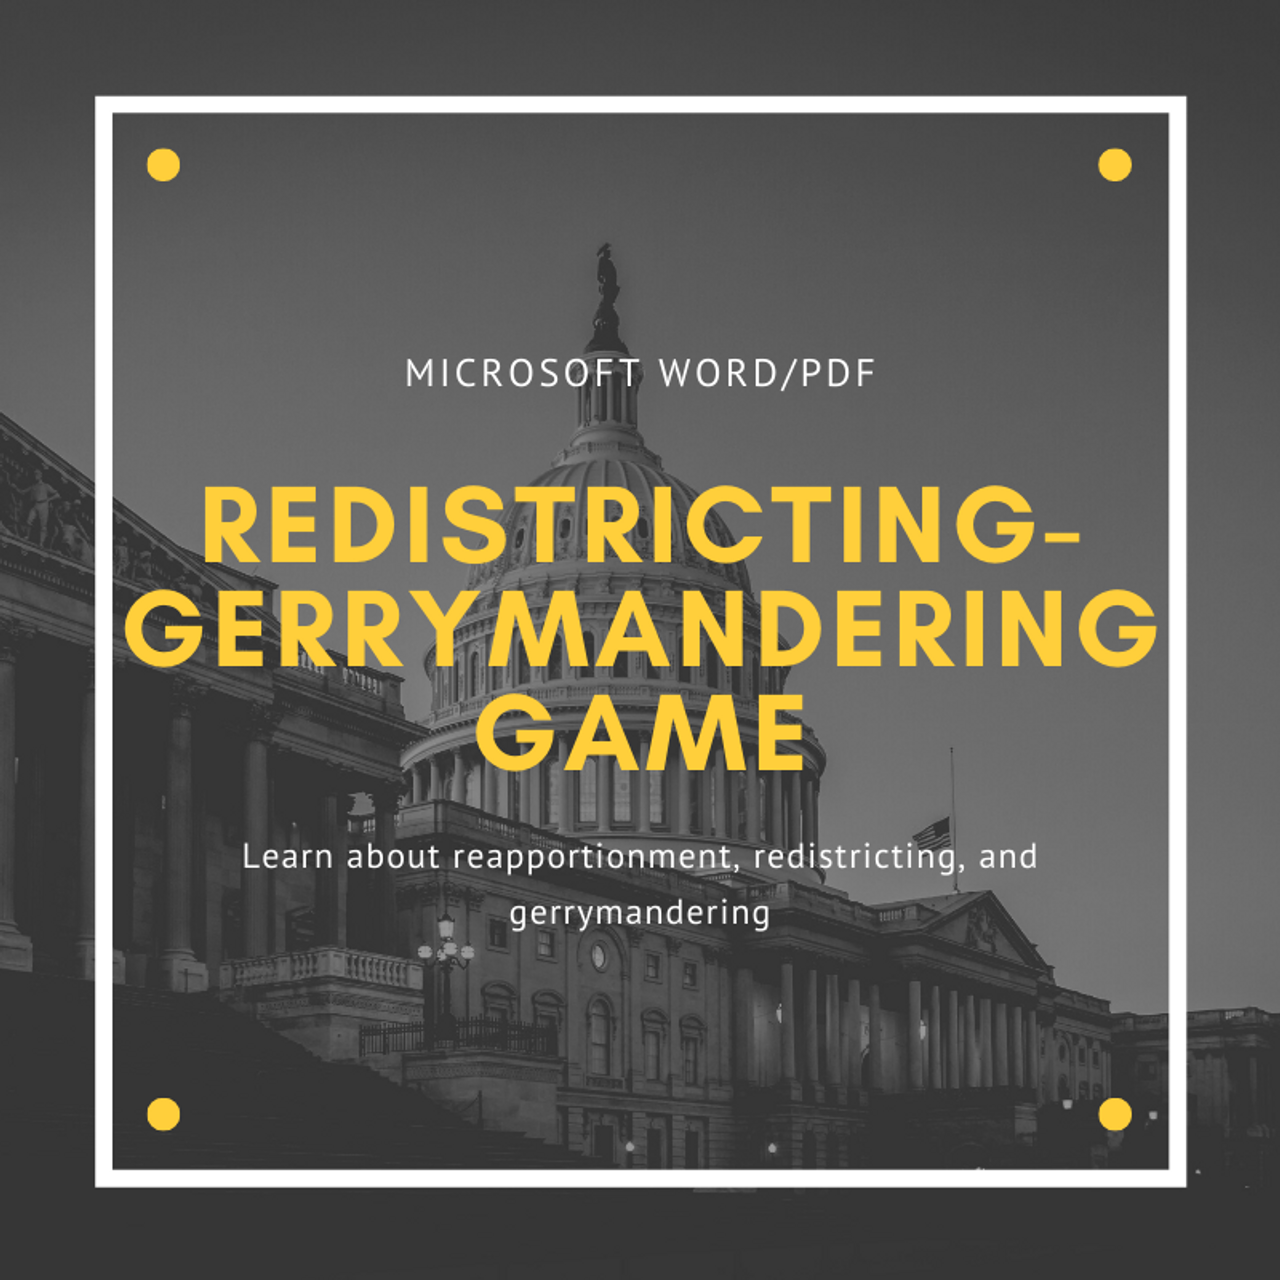 Redistricting-Gerrymandering Game